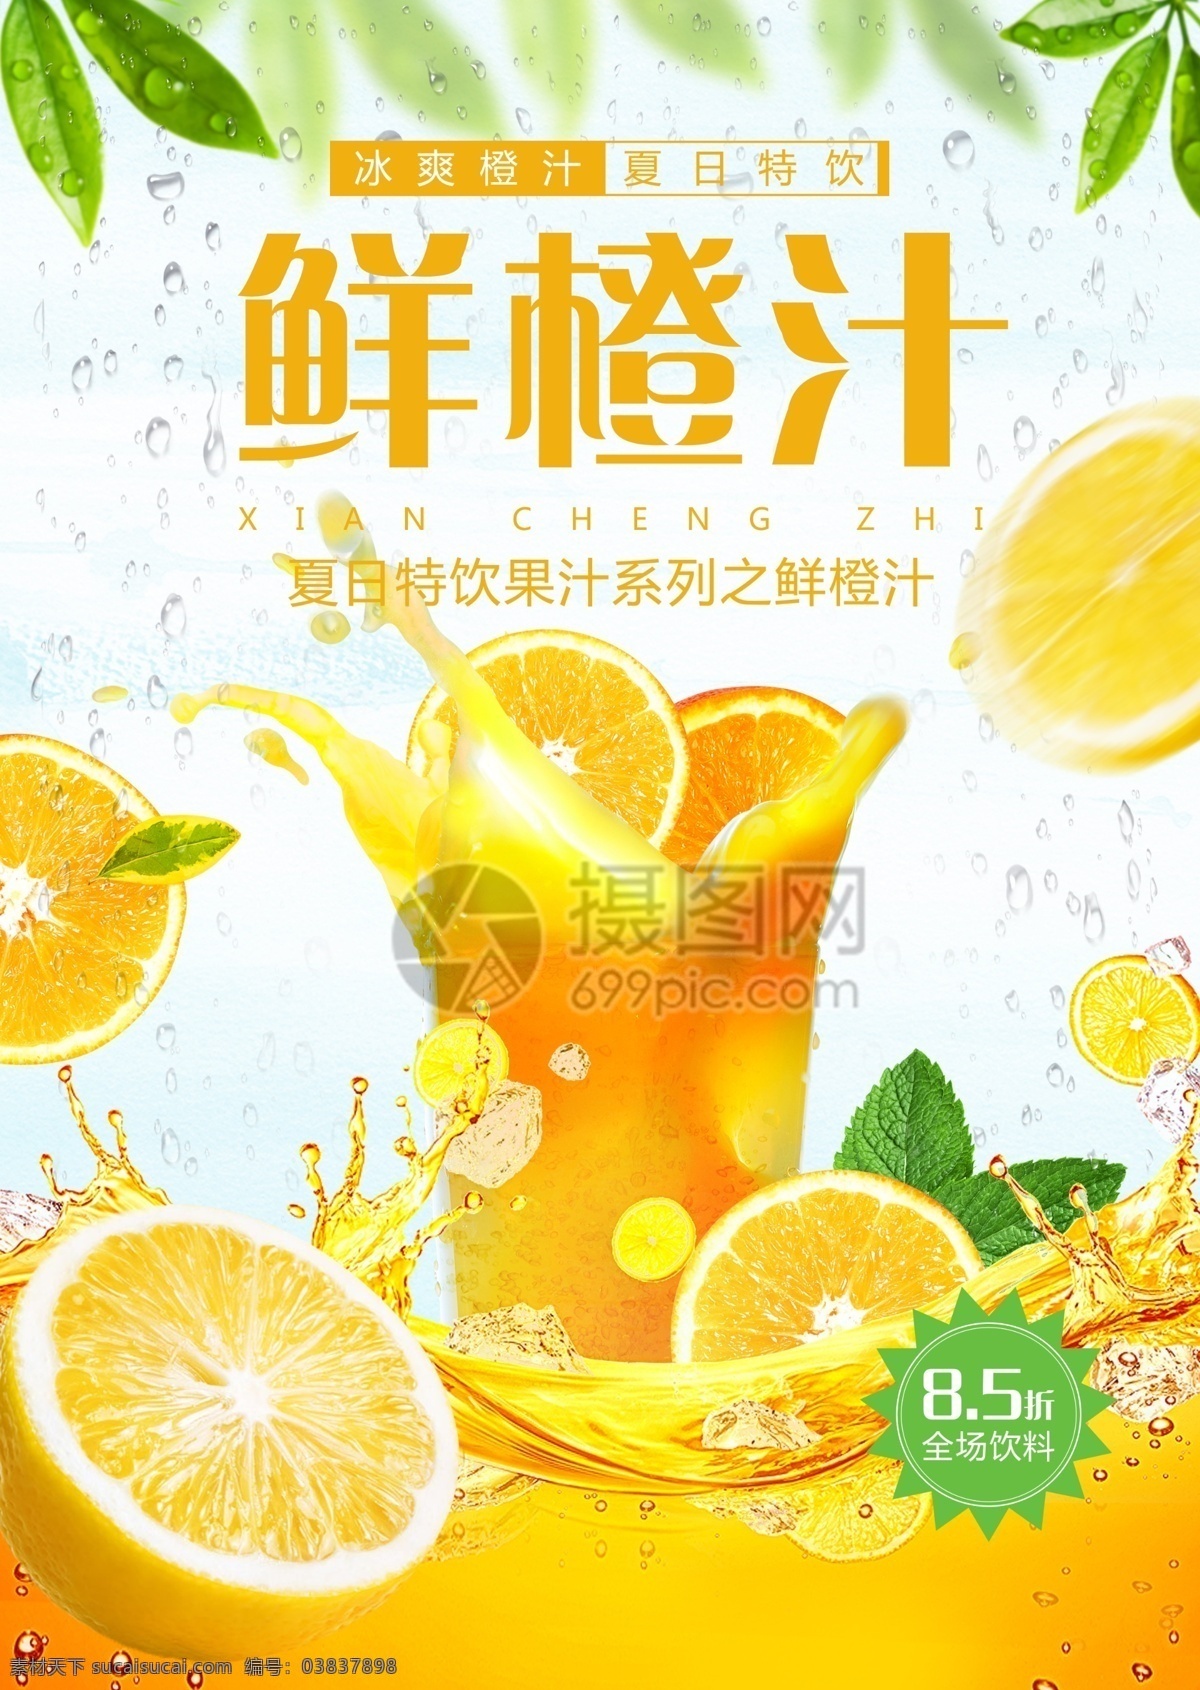 鲜橙汁 果汁 促销 宣传单 橙汁传单 果汁宣传单 夏季饮料 冰镇饮料 冰爽饮品 饮料宣传单 果汁饮料